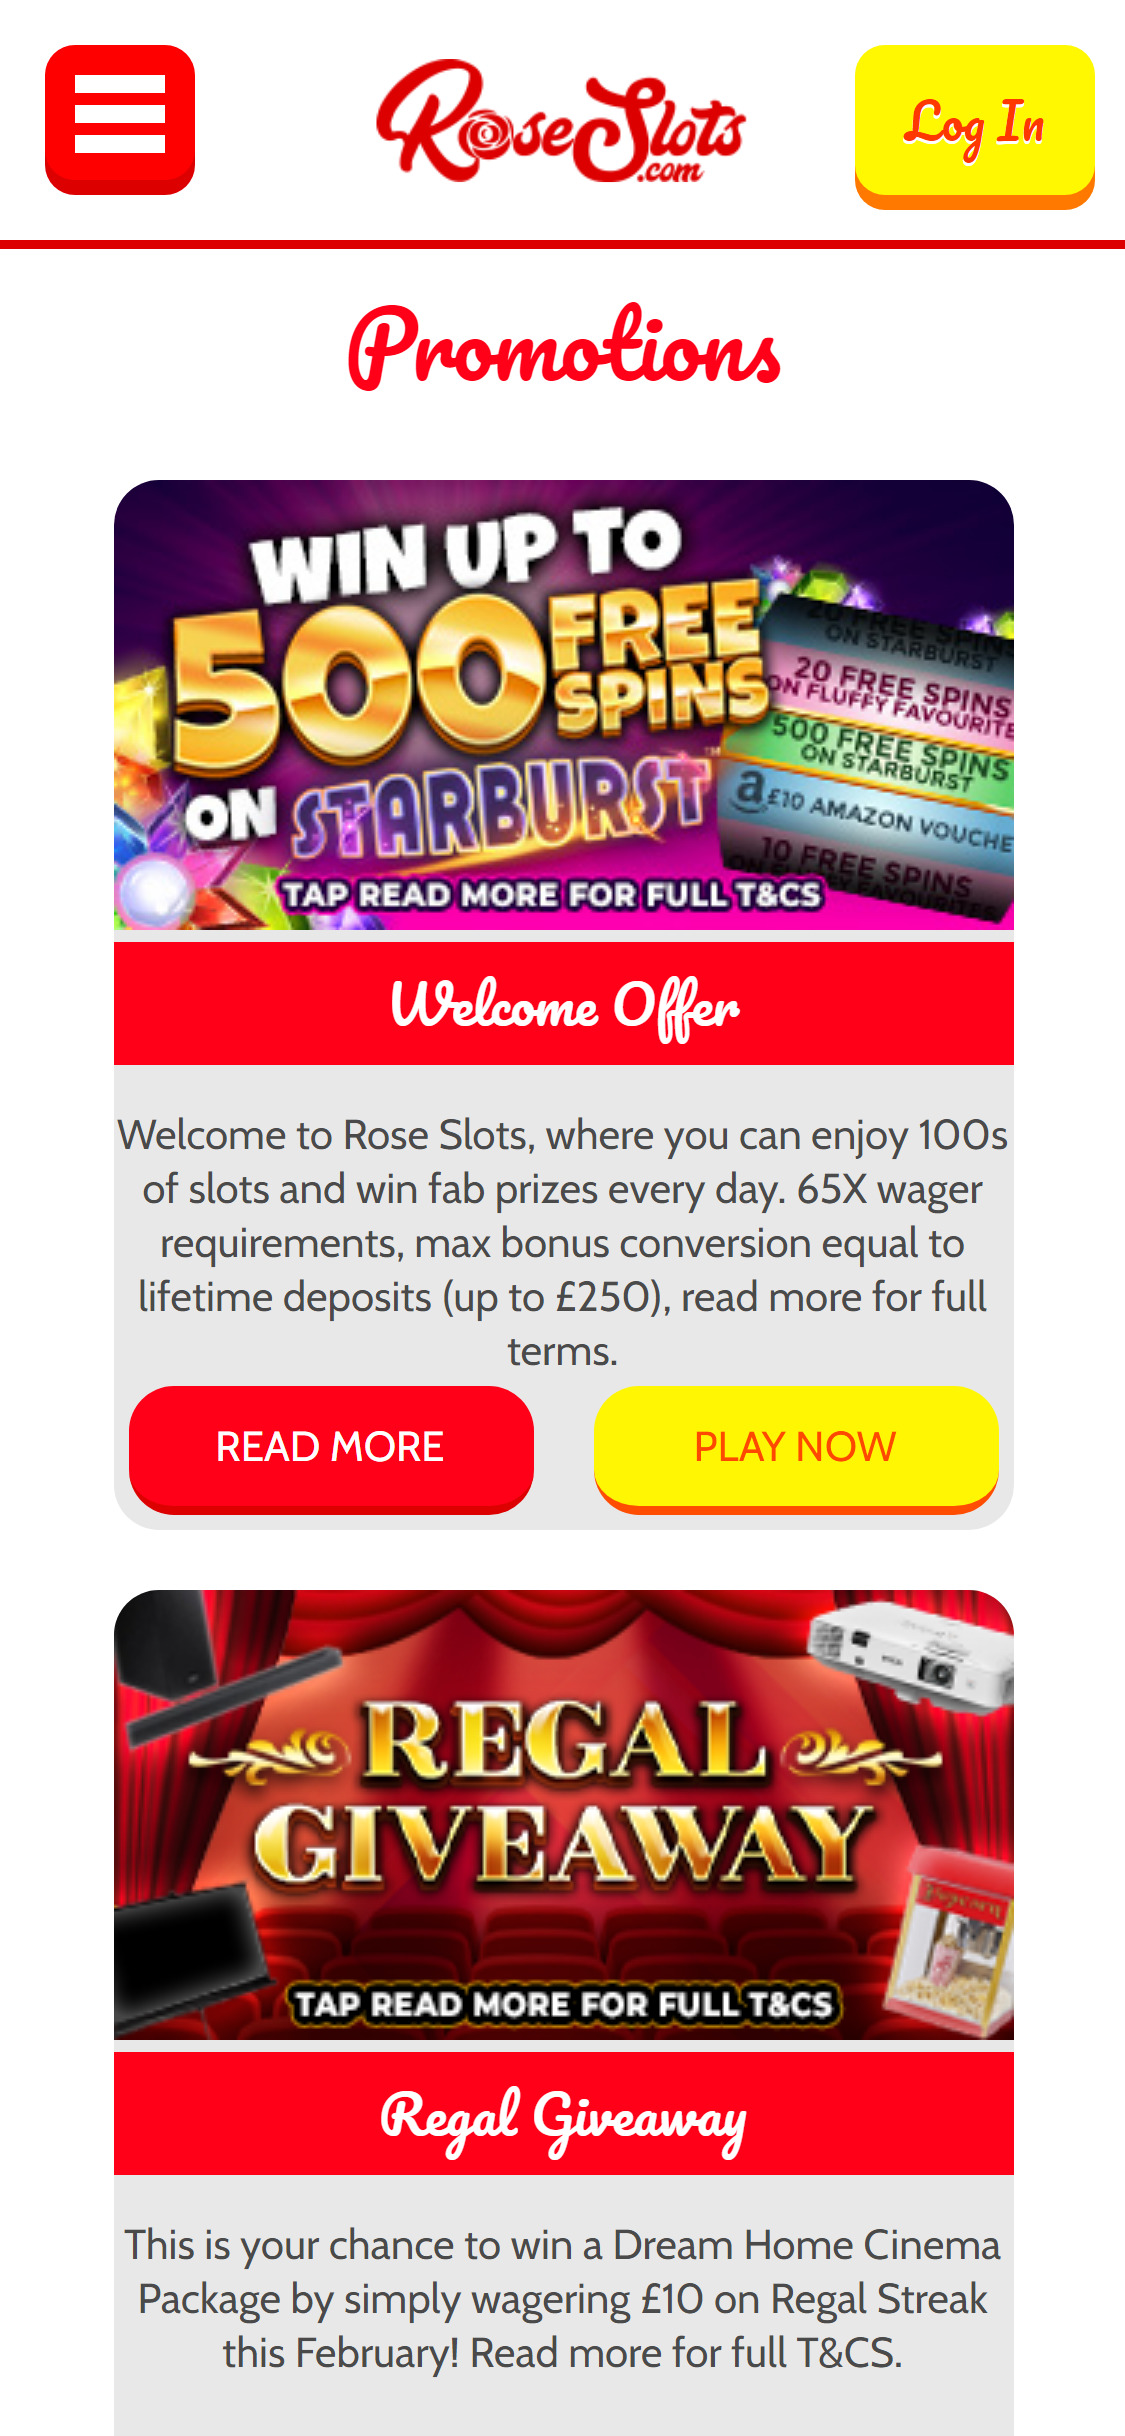 Rose Slots Casino Mobile No Deposit Bonus Review